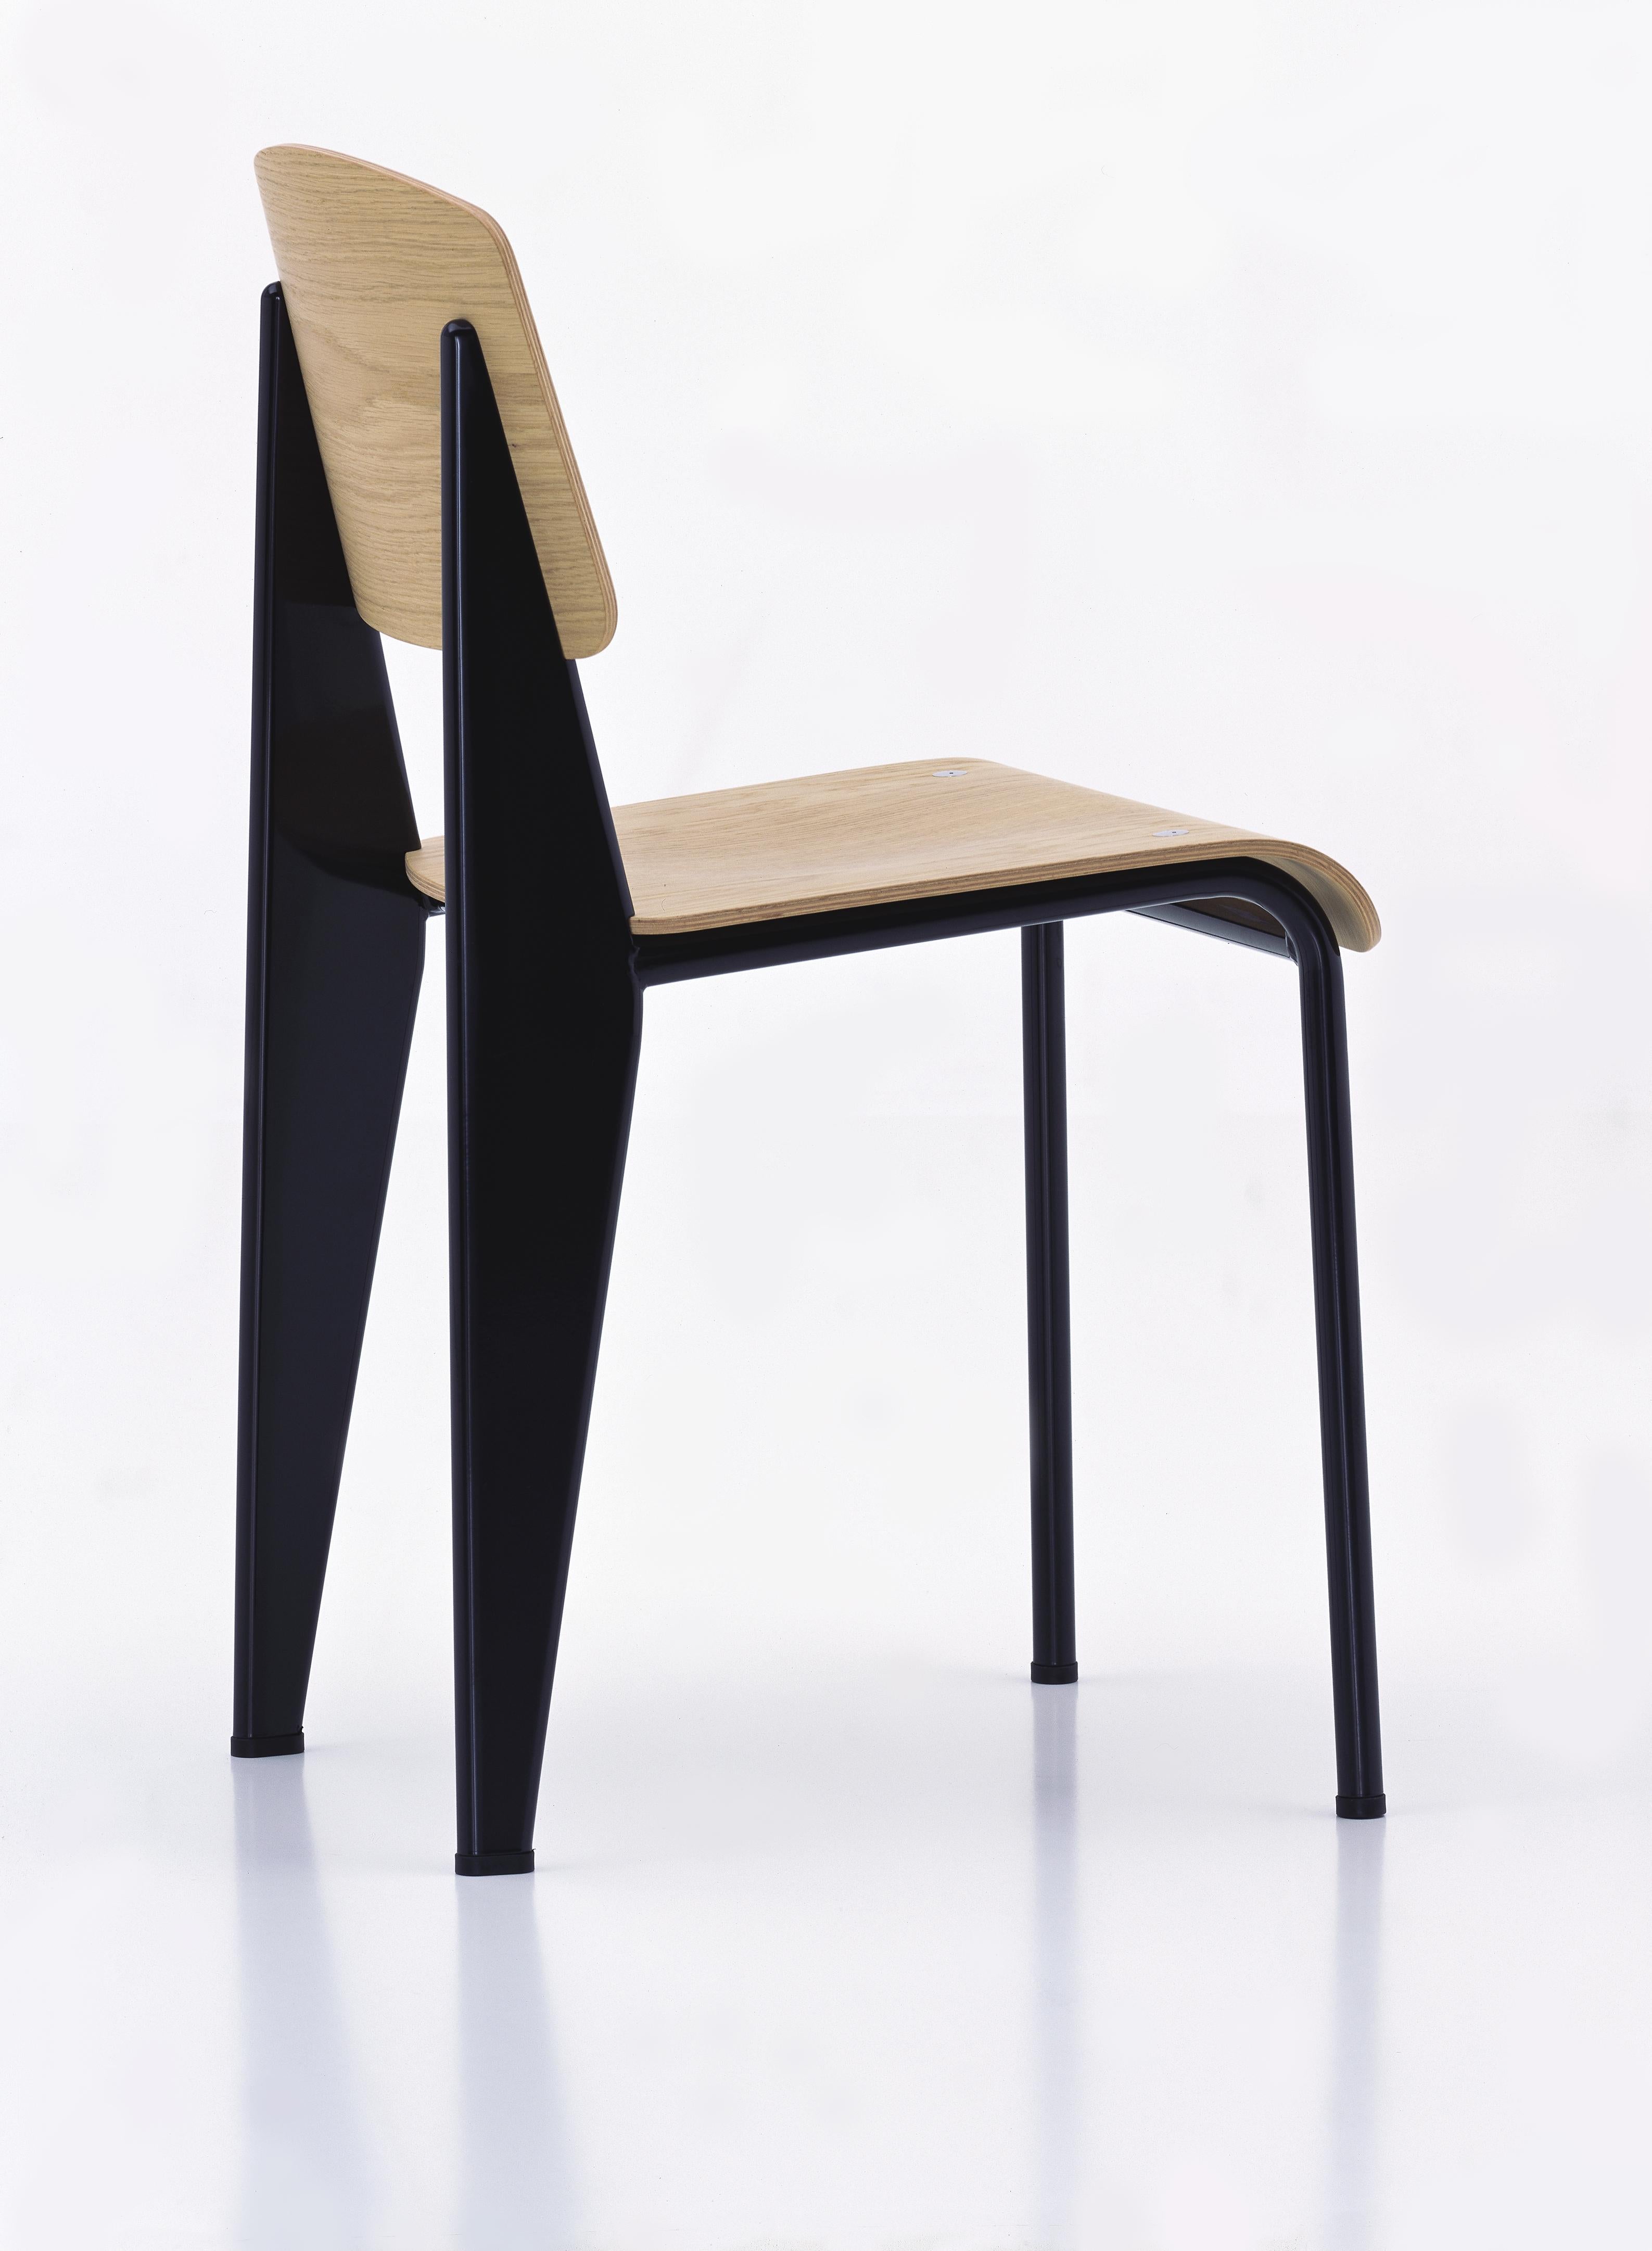 Chaise standard Jean Prouvé en chêne naturel et métal noir pour Vitra. La chaise standard est un chef-d'œuvre précoce du designer et ingénieur français Jean Prouvé. Conçue à l'origine en 1934, la Standard est devenue l'un des classiques les plus